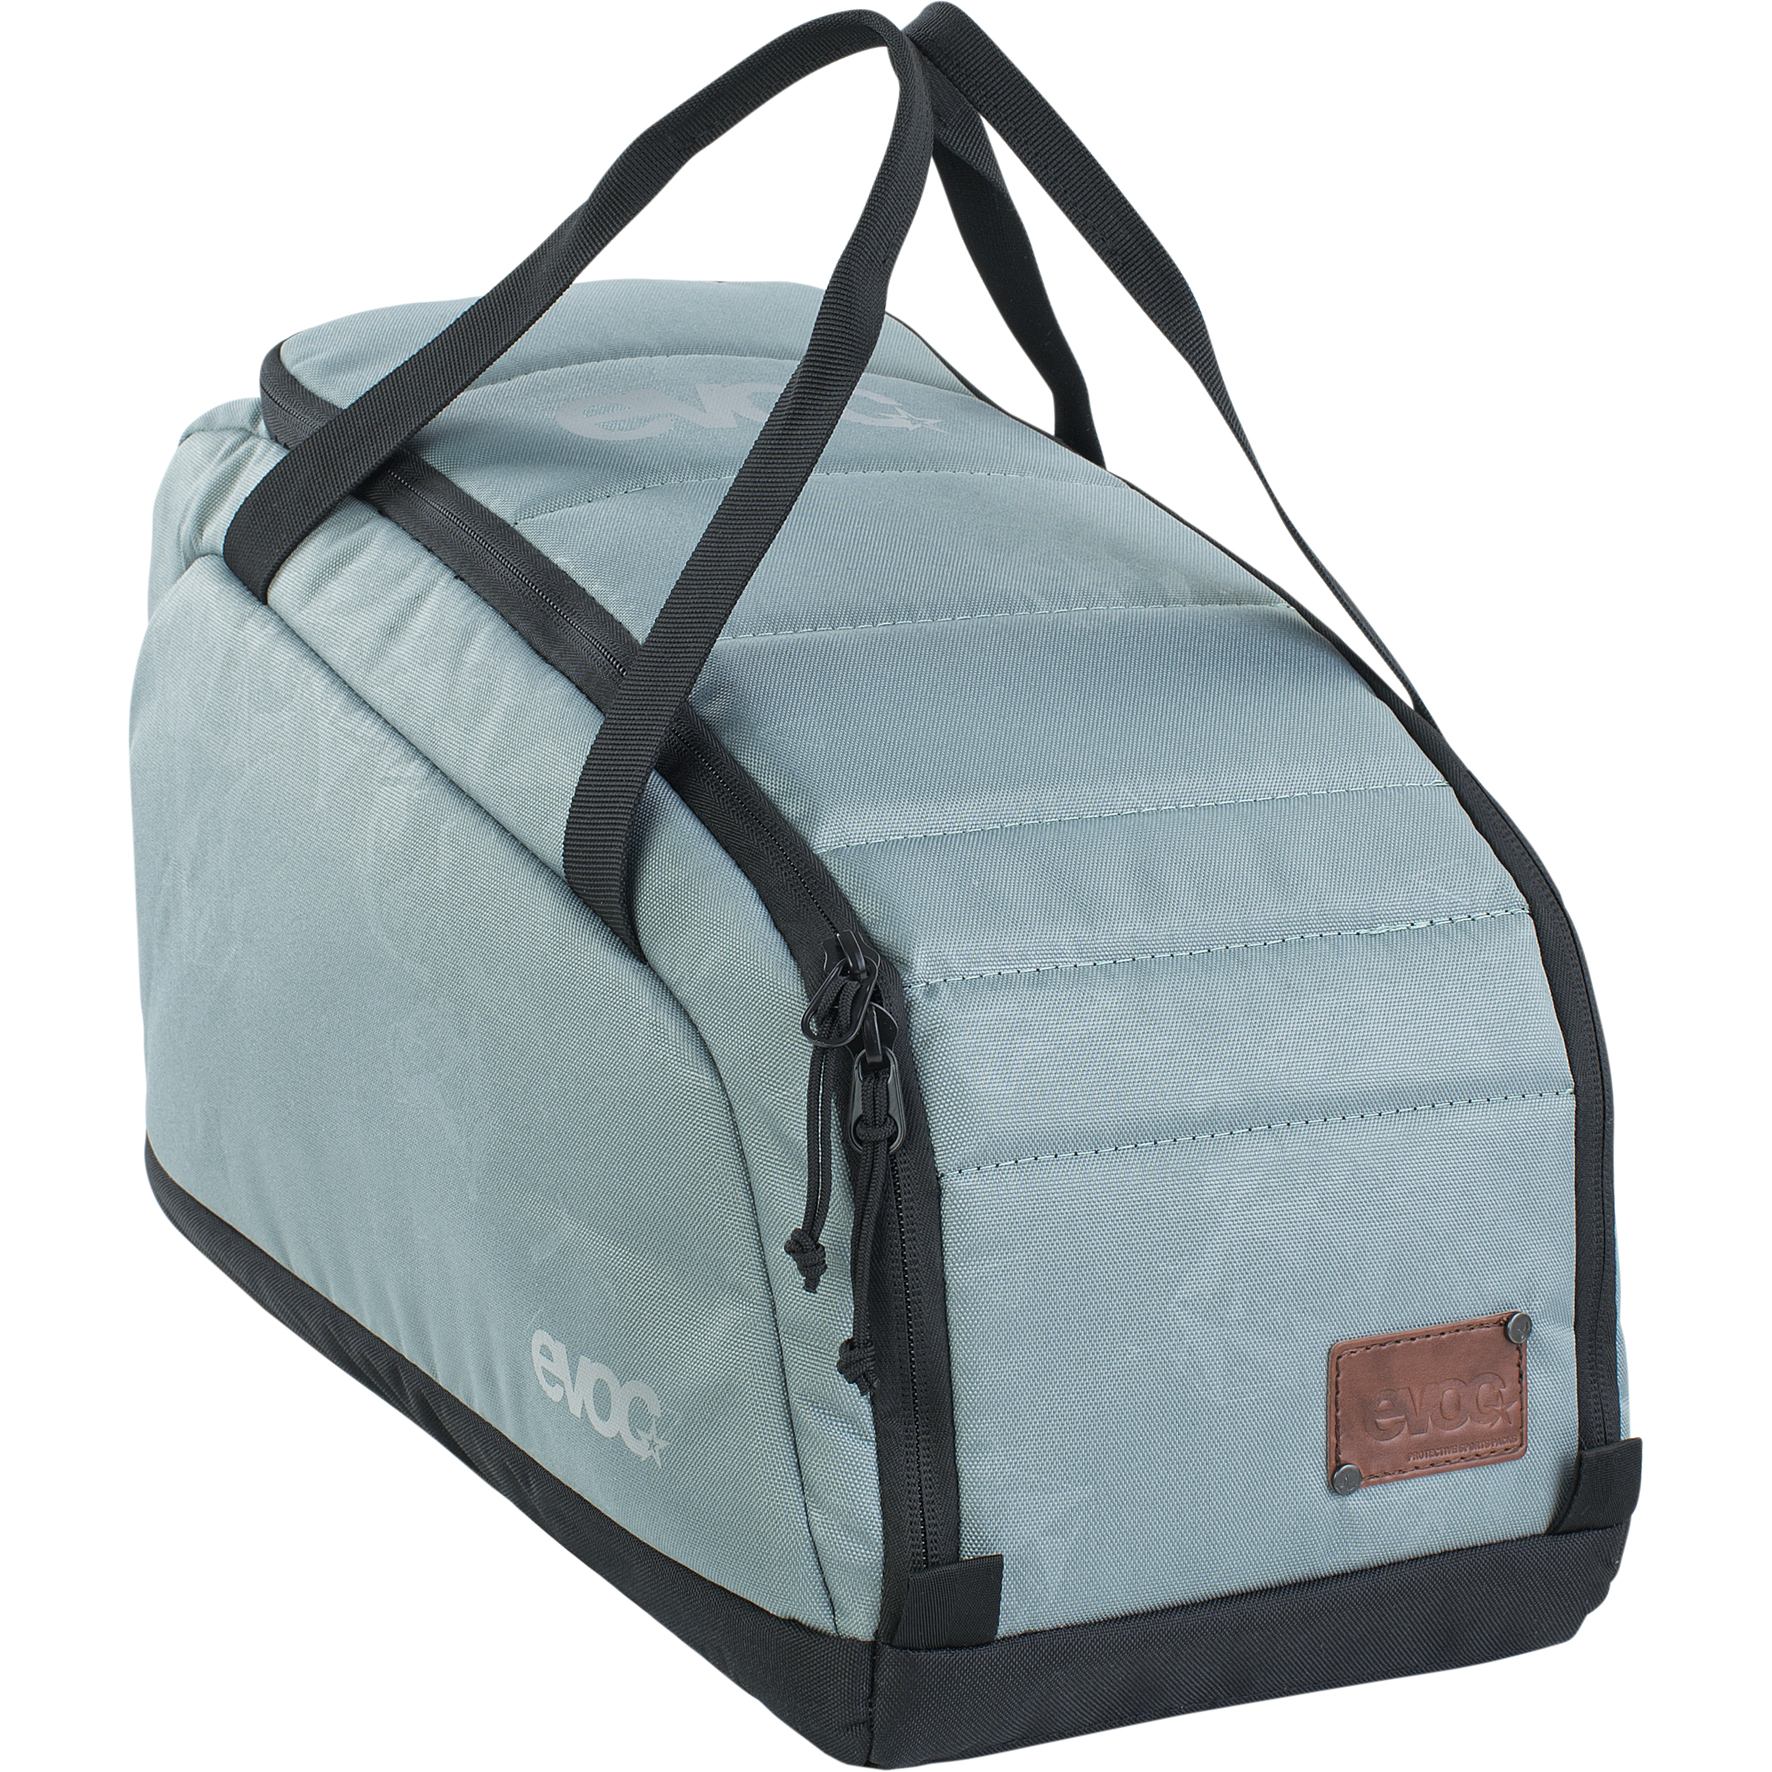 Produktbild von EVOC Gear Bag 20L Sporttasche - Steel